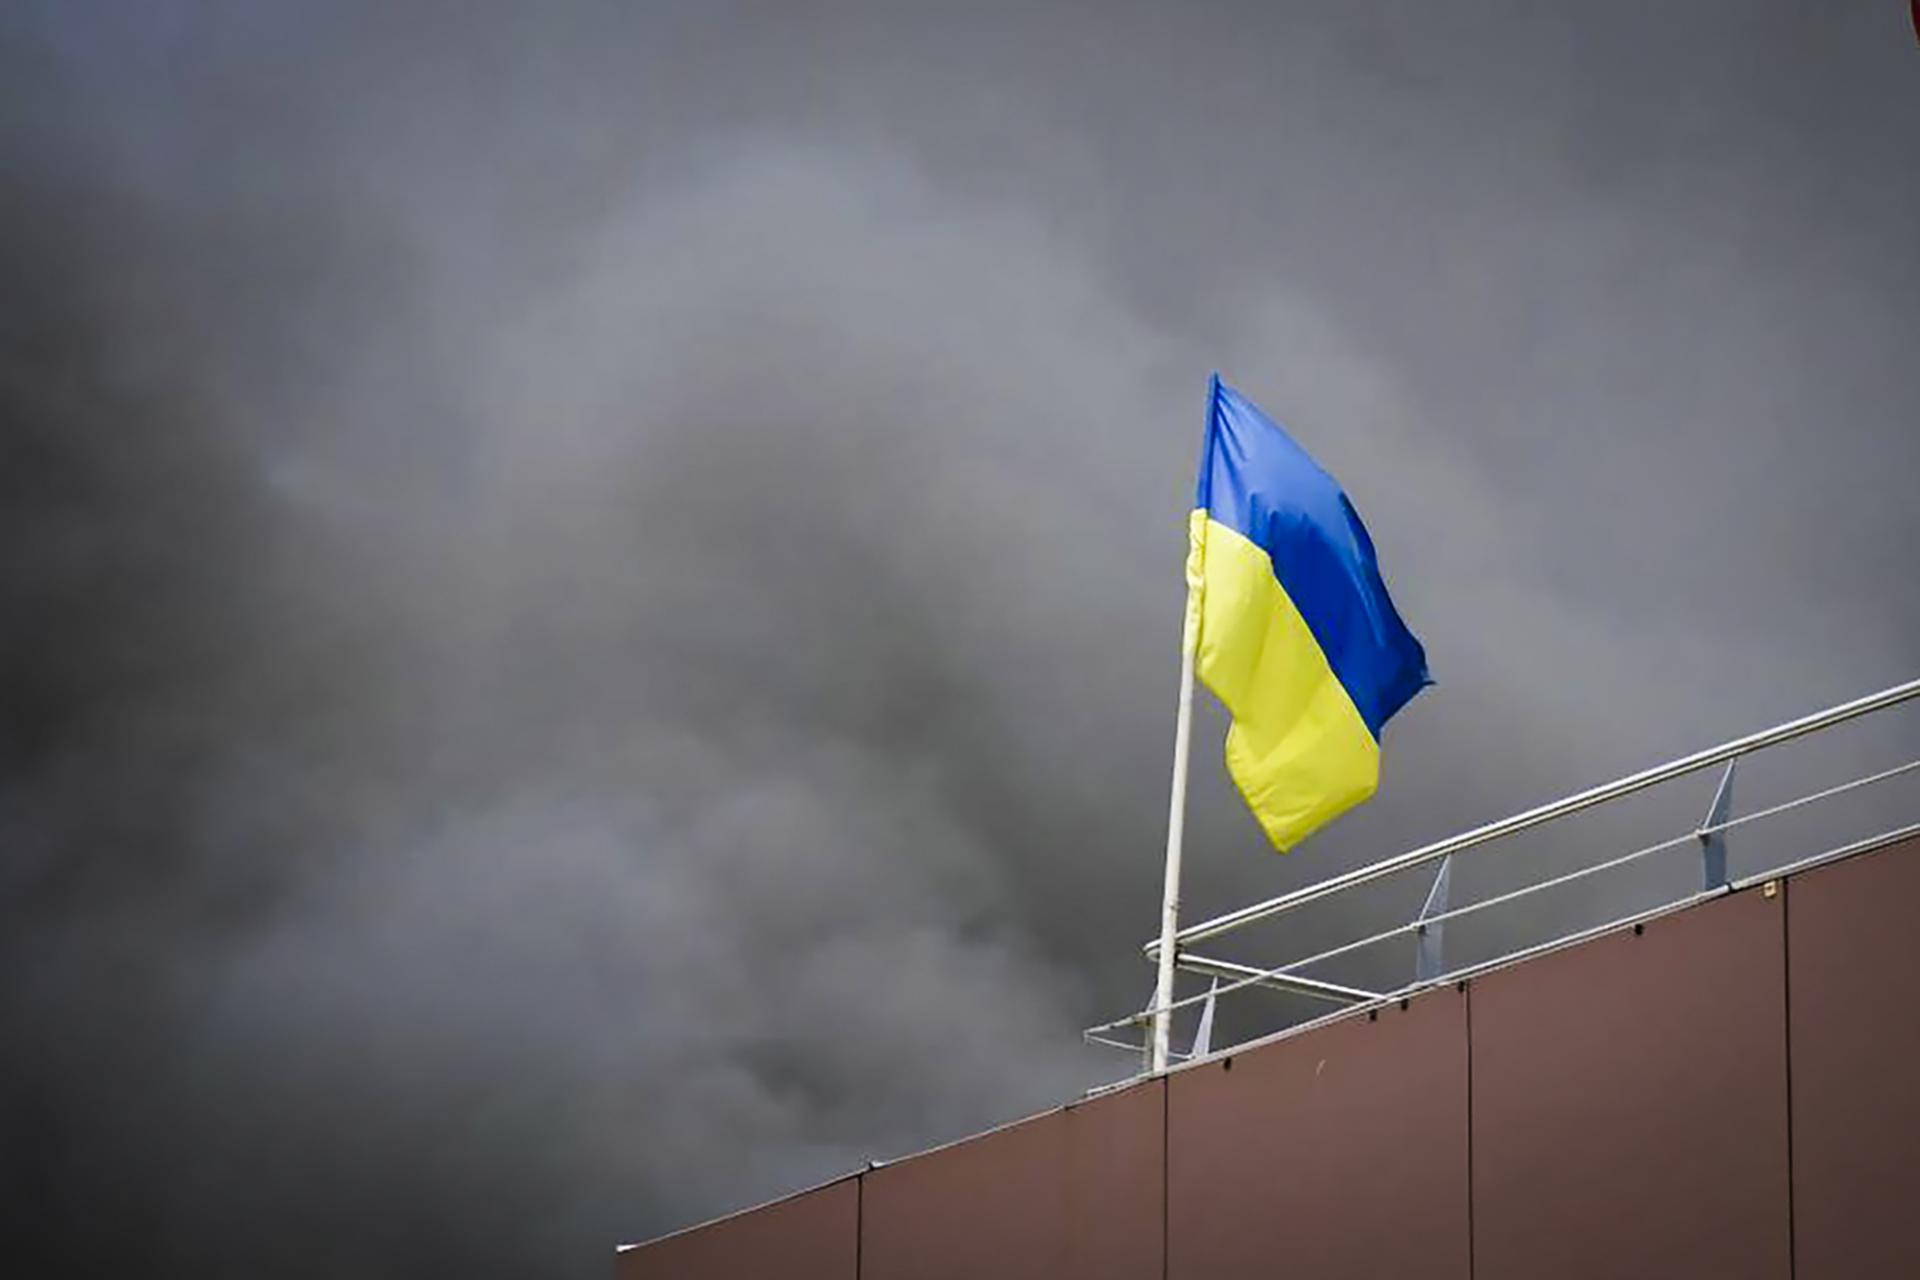 Takmer tretina Ukrajincov by podľa prieskumu prijala územné ústupky, ak by ukončili vojnu